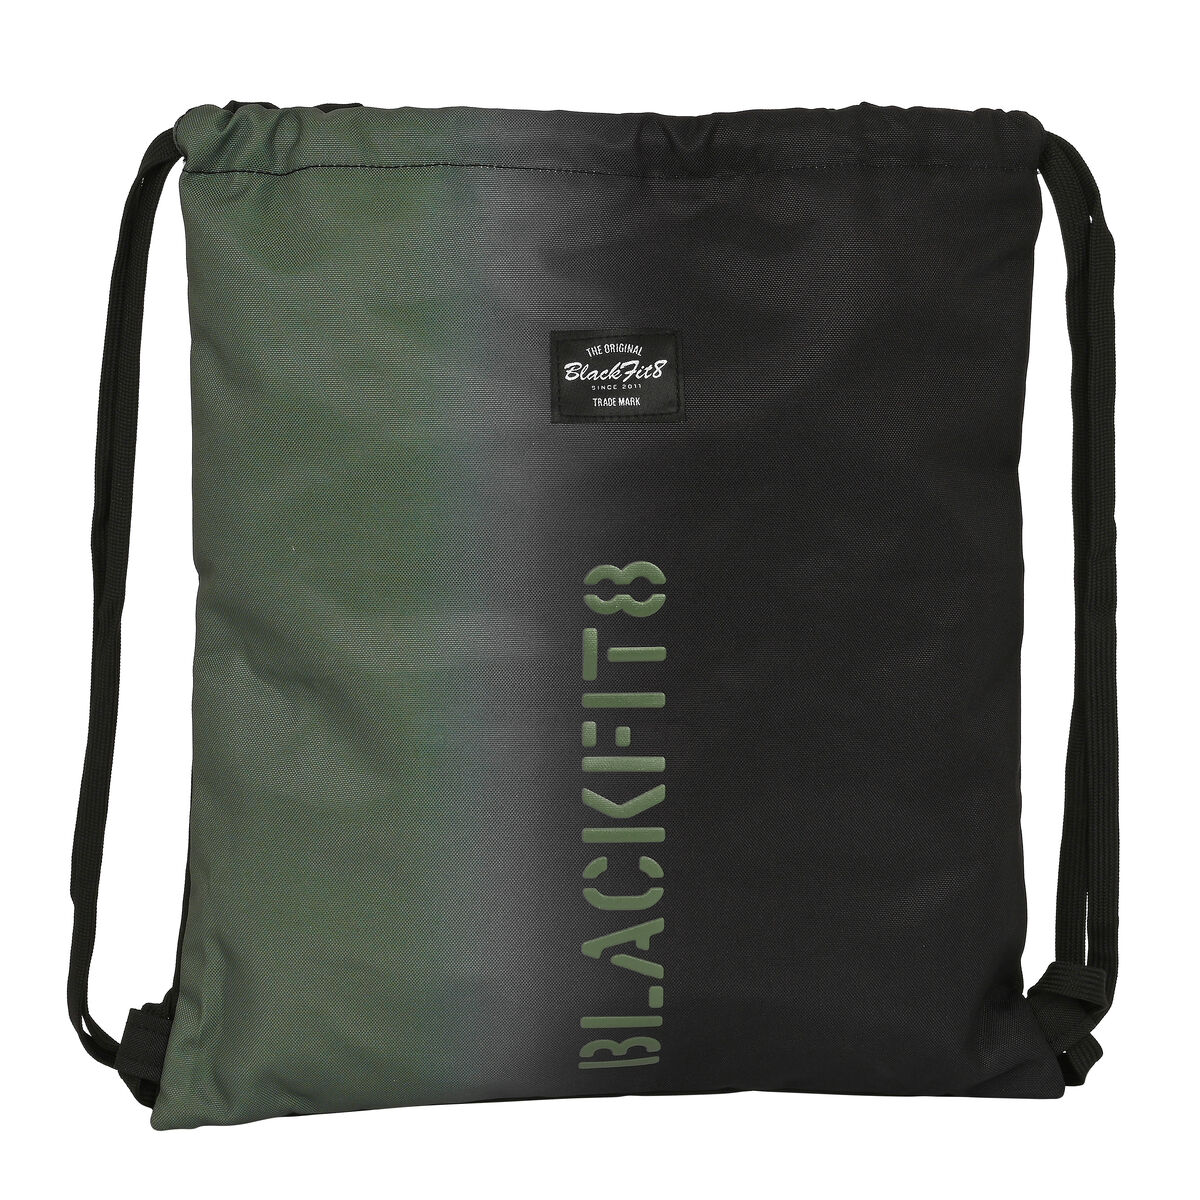 Sac à dos serré par des ficelles BlackFit8 Gradient Noir Vert militaire (35 x 40 x 1 cm)